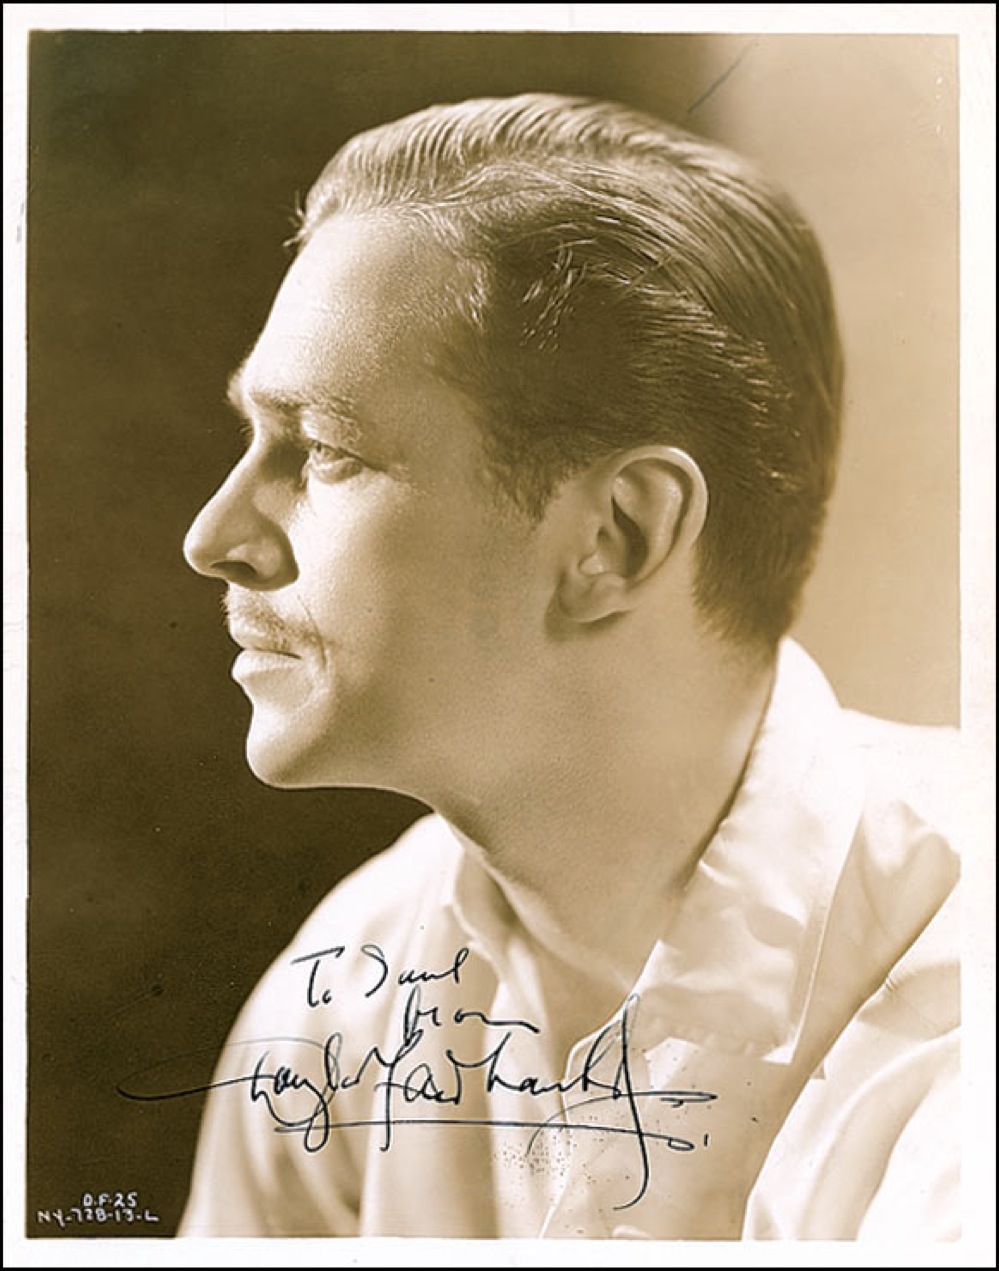 Lot #35 Douglas Fairbanks, Jr